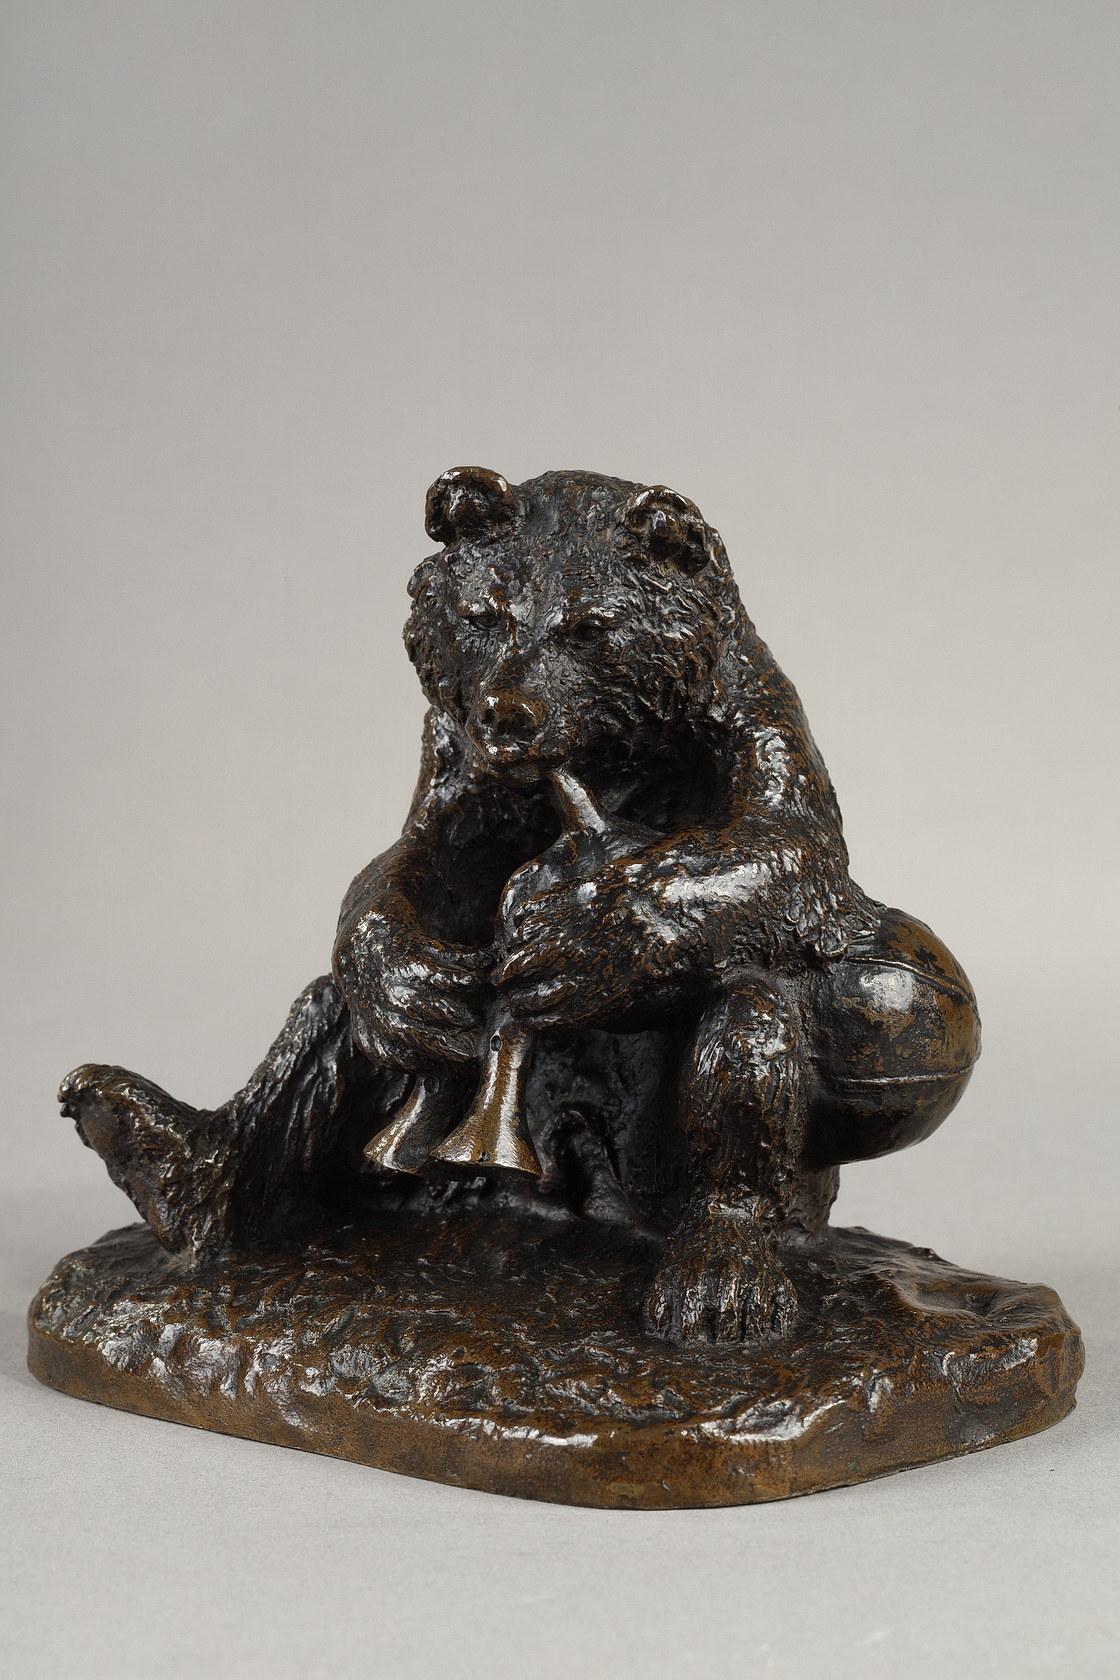 Figurative Sculpture Christopher Fratin - Cornemuseur de l'ours